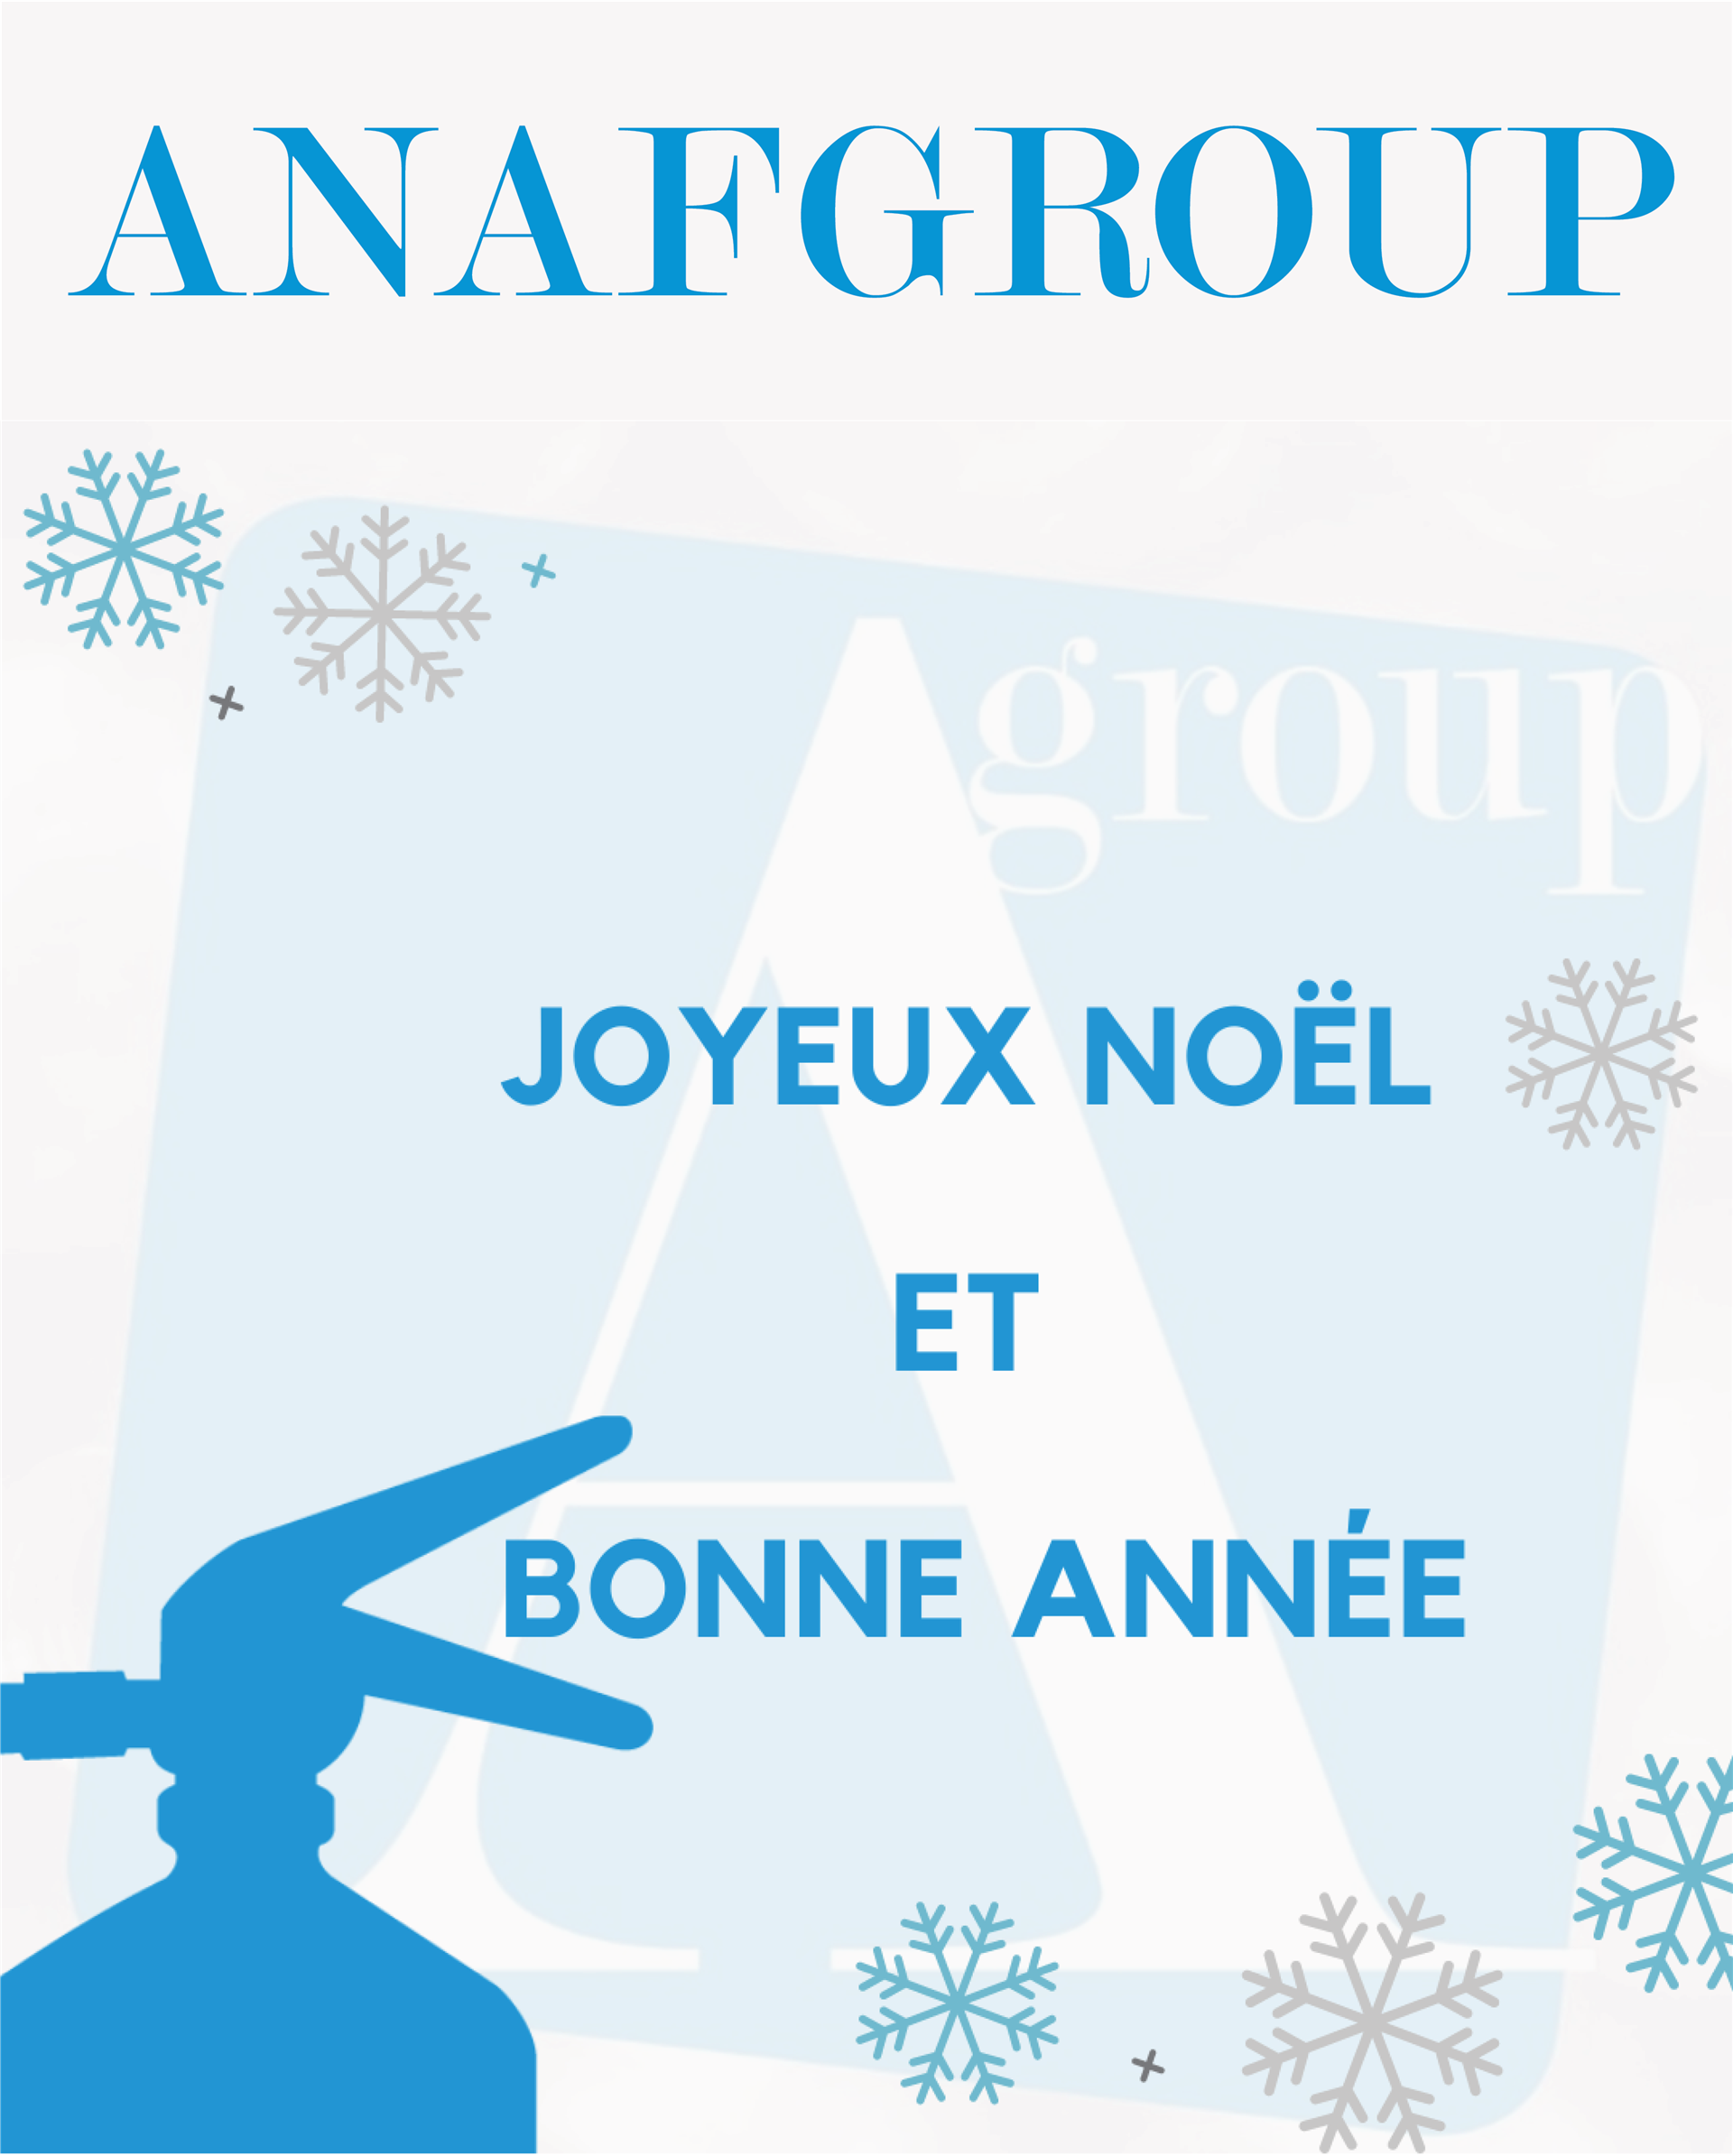 Anafgroup: Joyeux Noël!